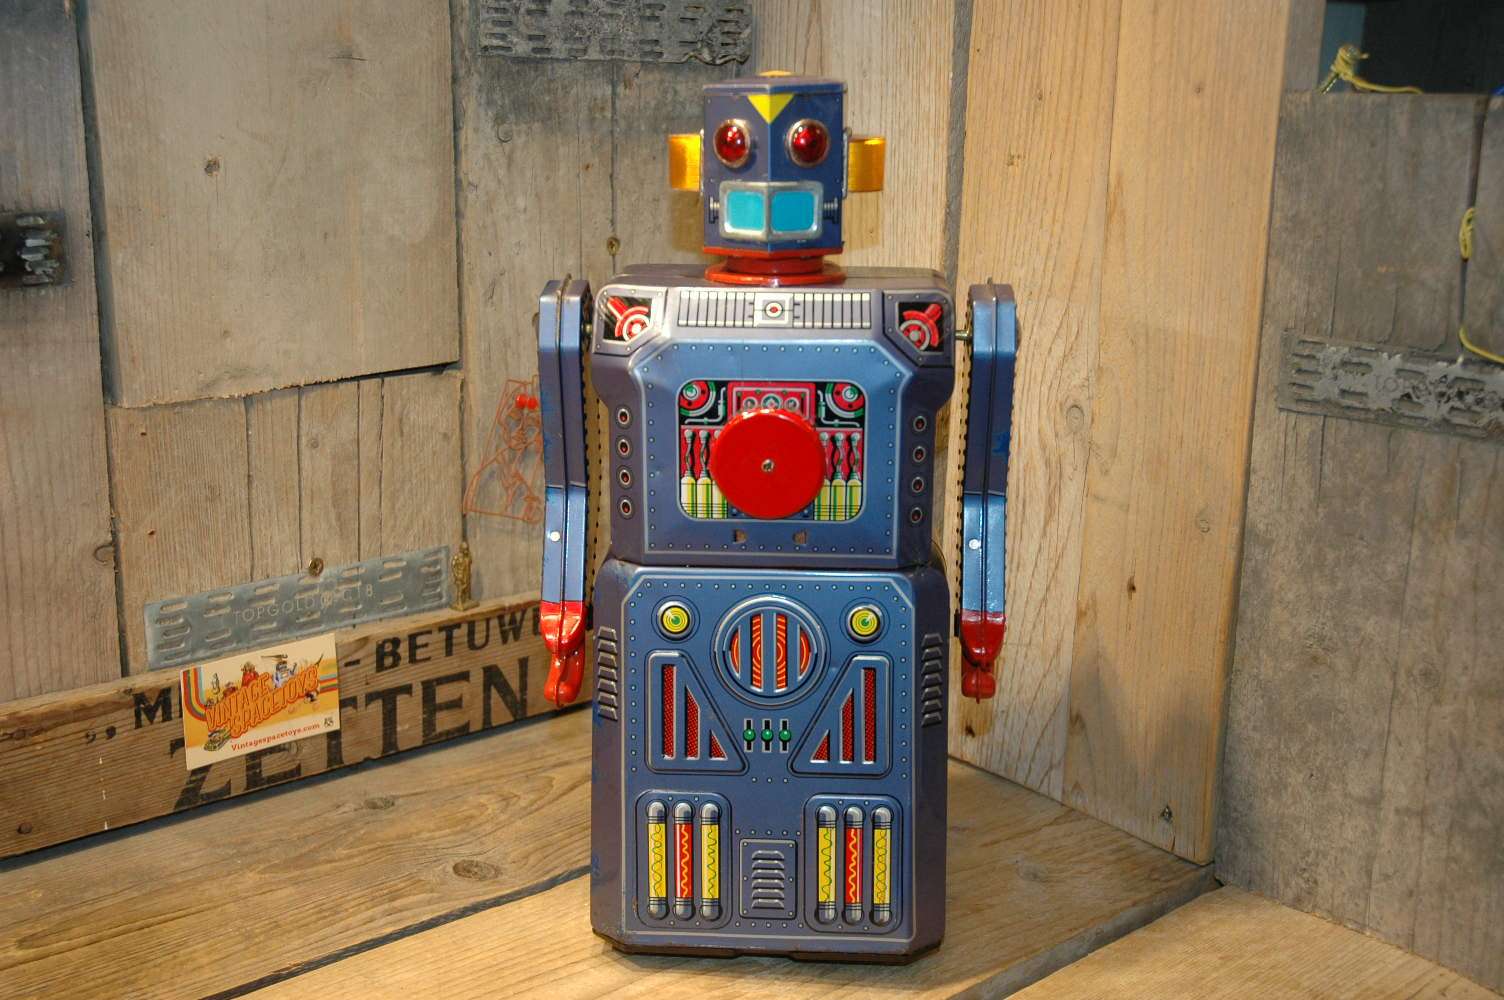 target robot toy